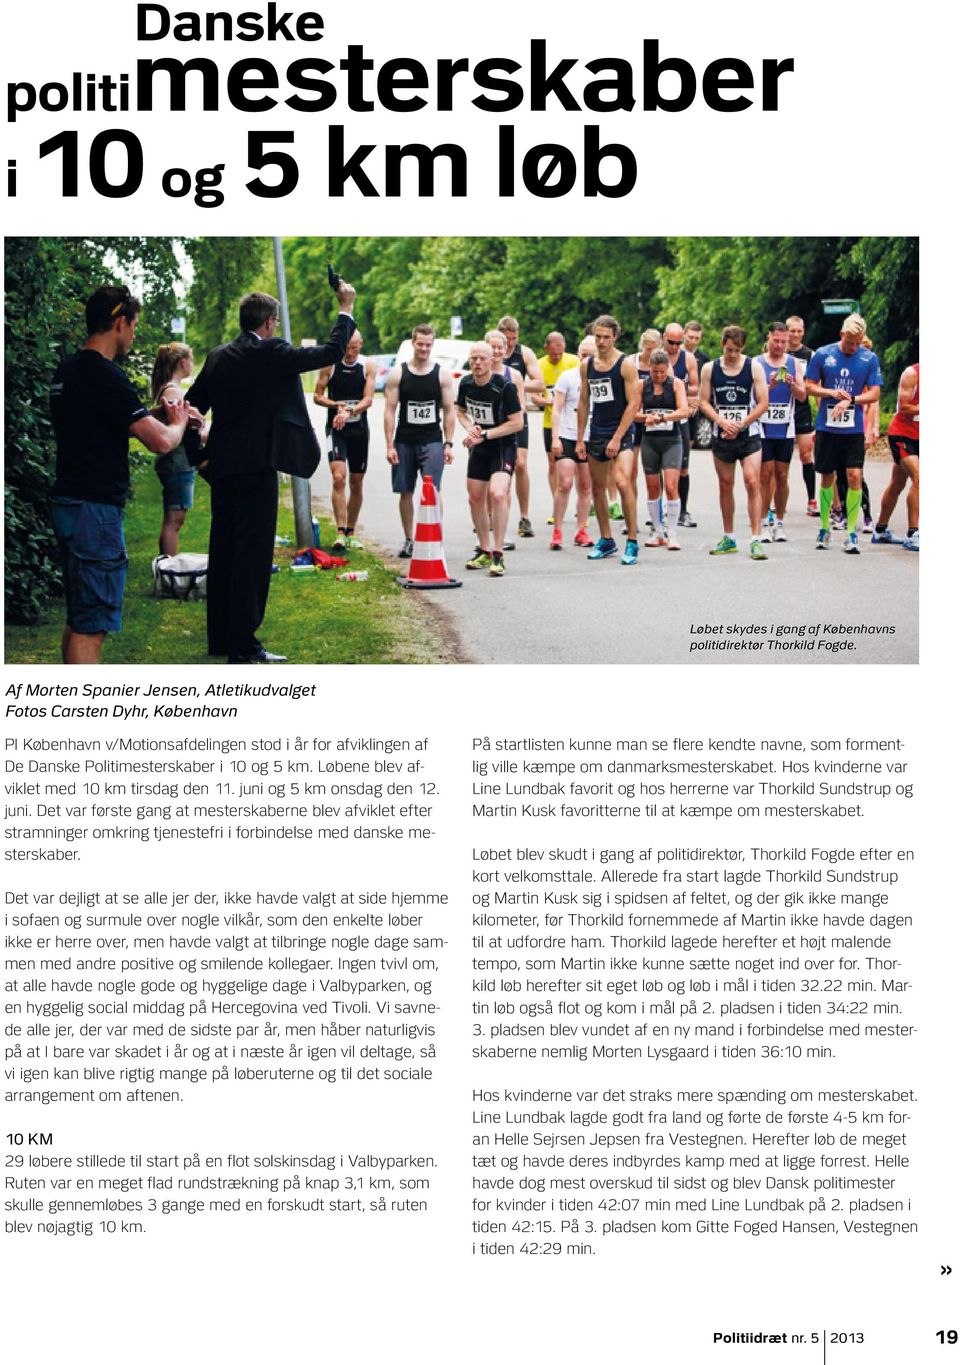 Løbene blev afviklet med 10 km tirsdag den 11. juni og 5 km onsdag den 12. juni. Det var første gang at mesterskaberne blev afviklet efter stramninger omkring tjenestefri i forbindelse med danske mesterskaber.